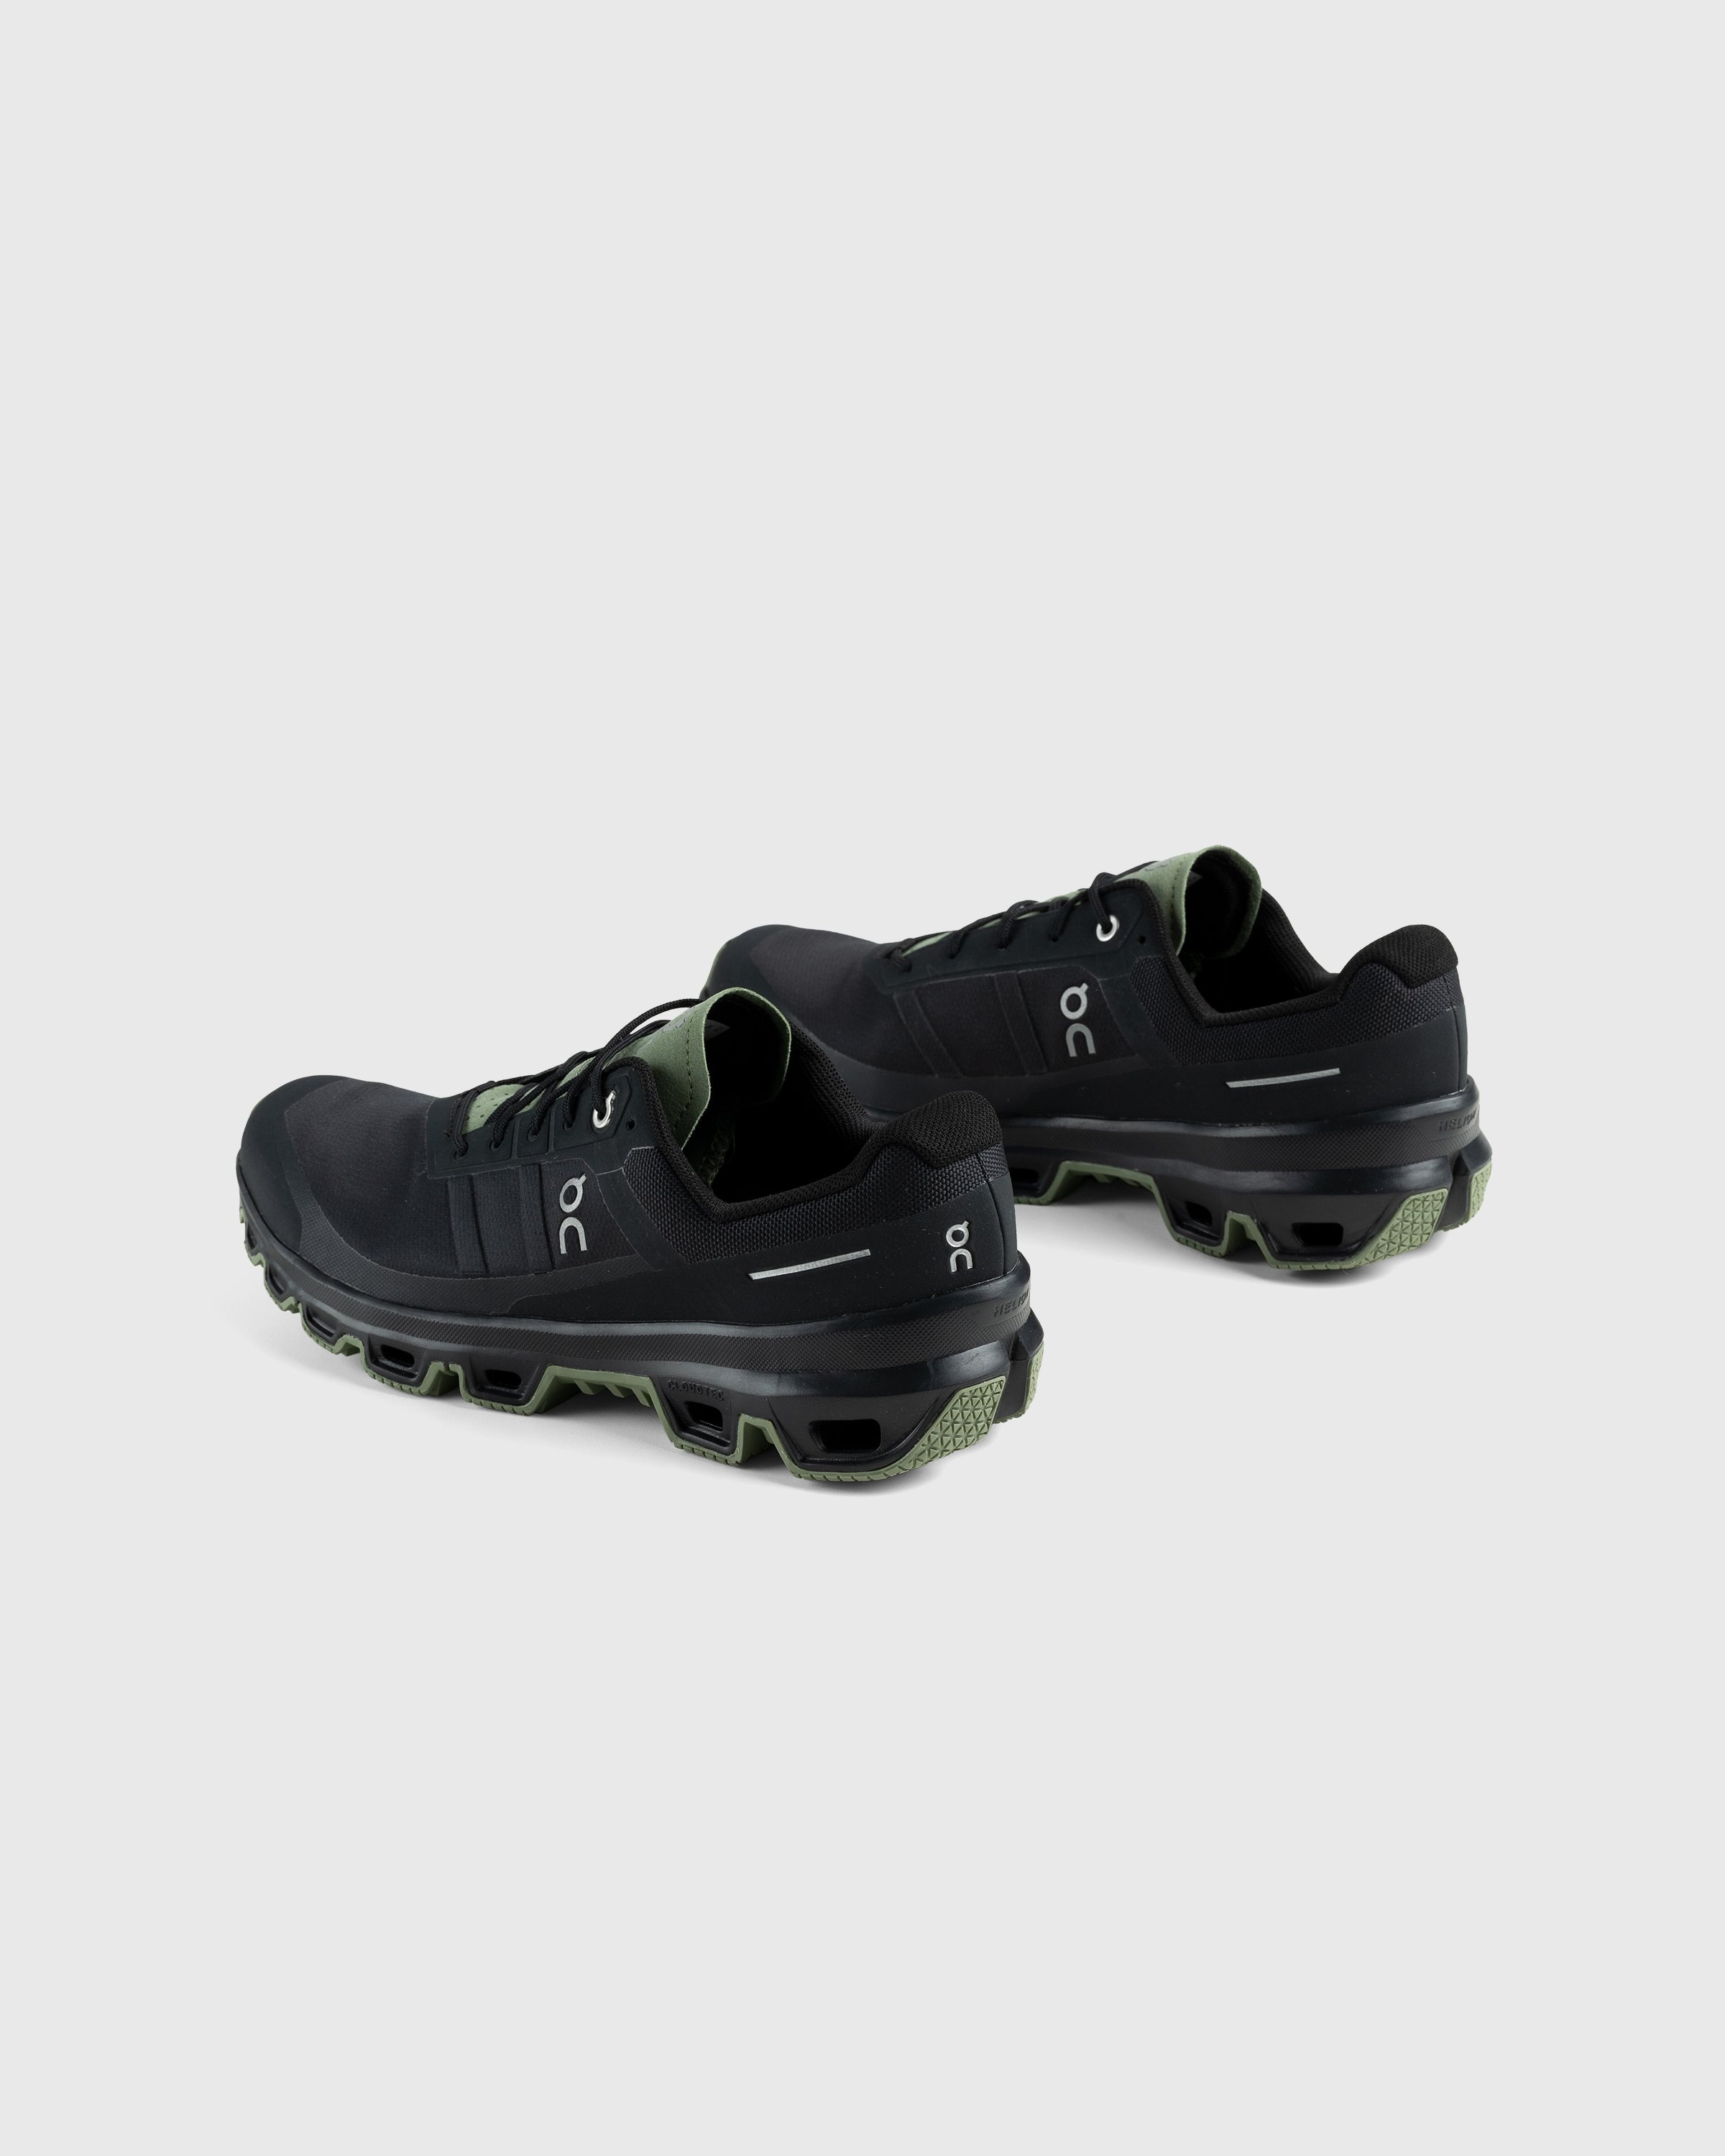 On – Cloudventure Black/Reseda - Low Top Sneakers - Black - Image 4